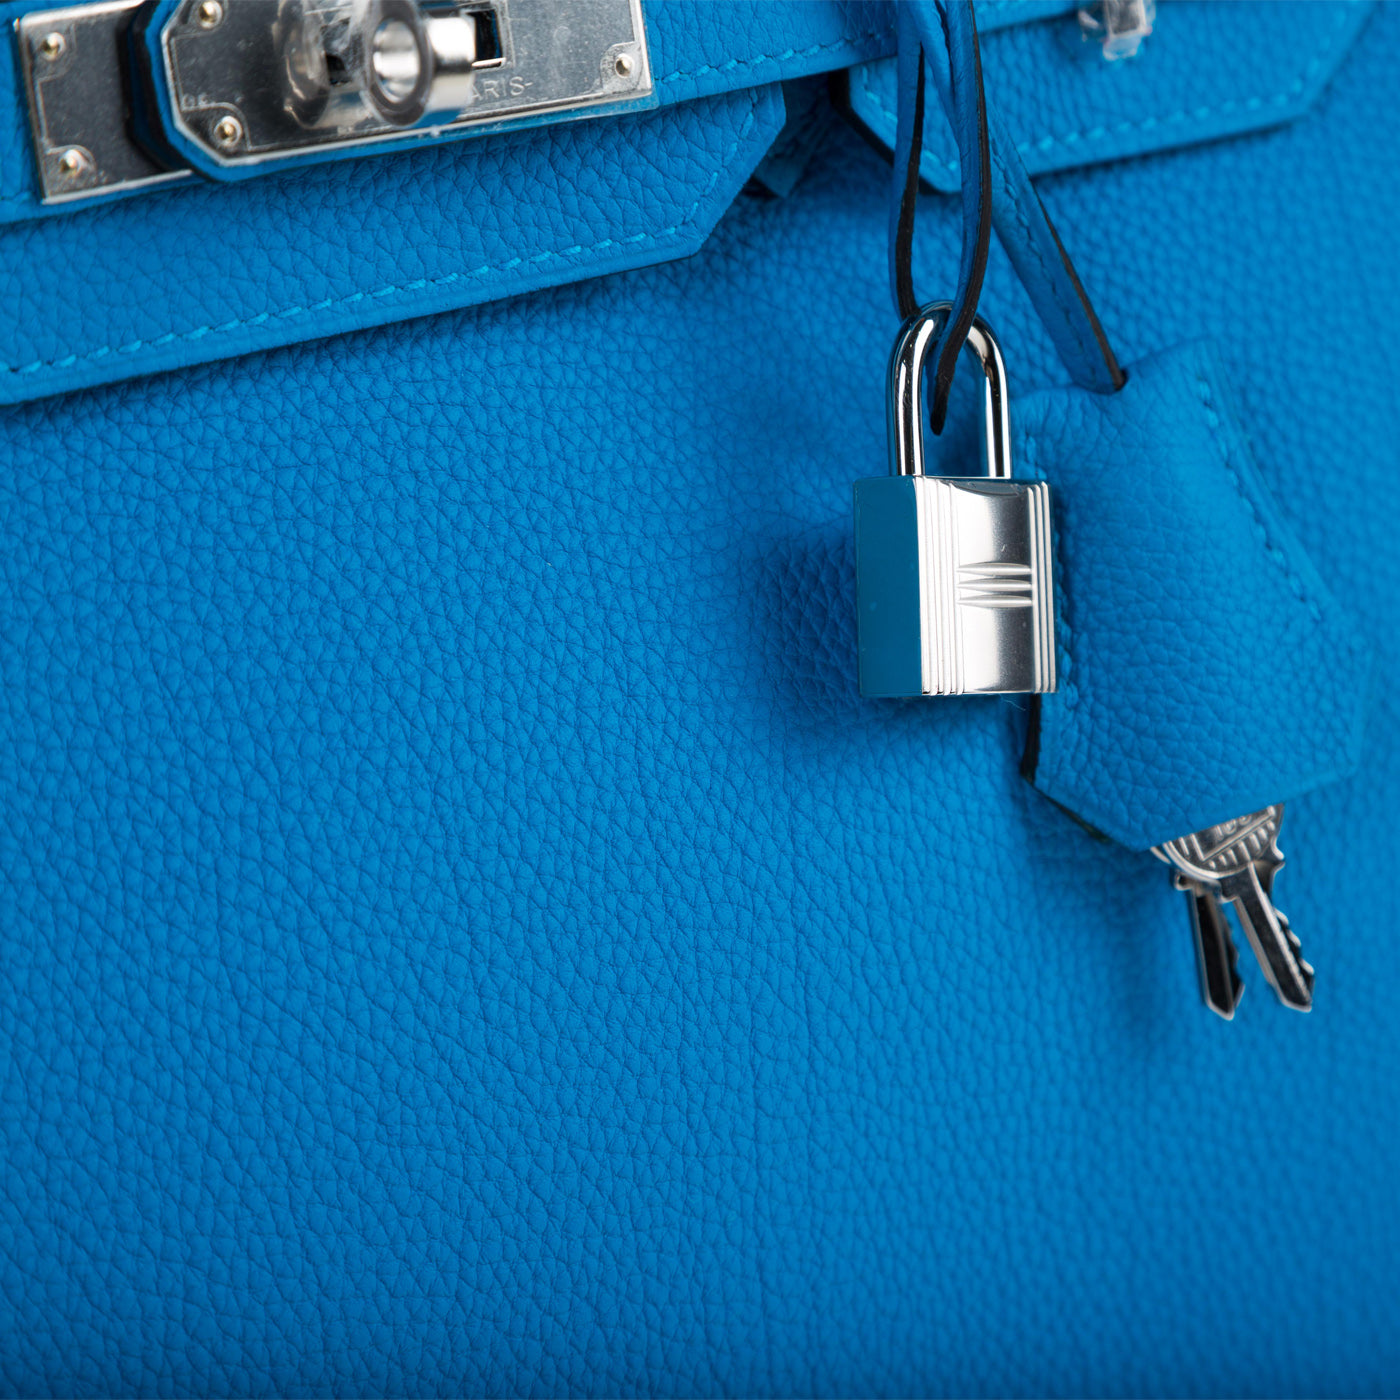 Hermès - Birkin 30cm - Blue Zanzibar Togo Leather - Palladium Hardware ...